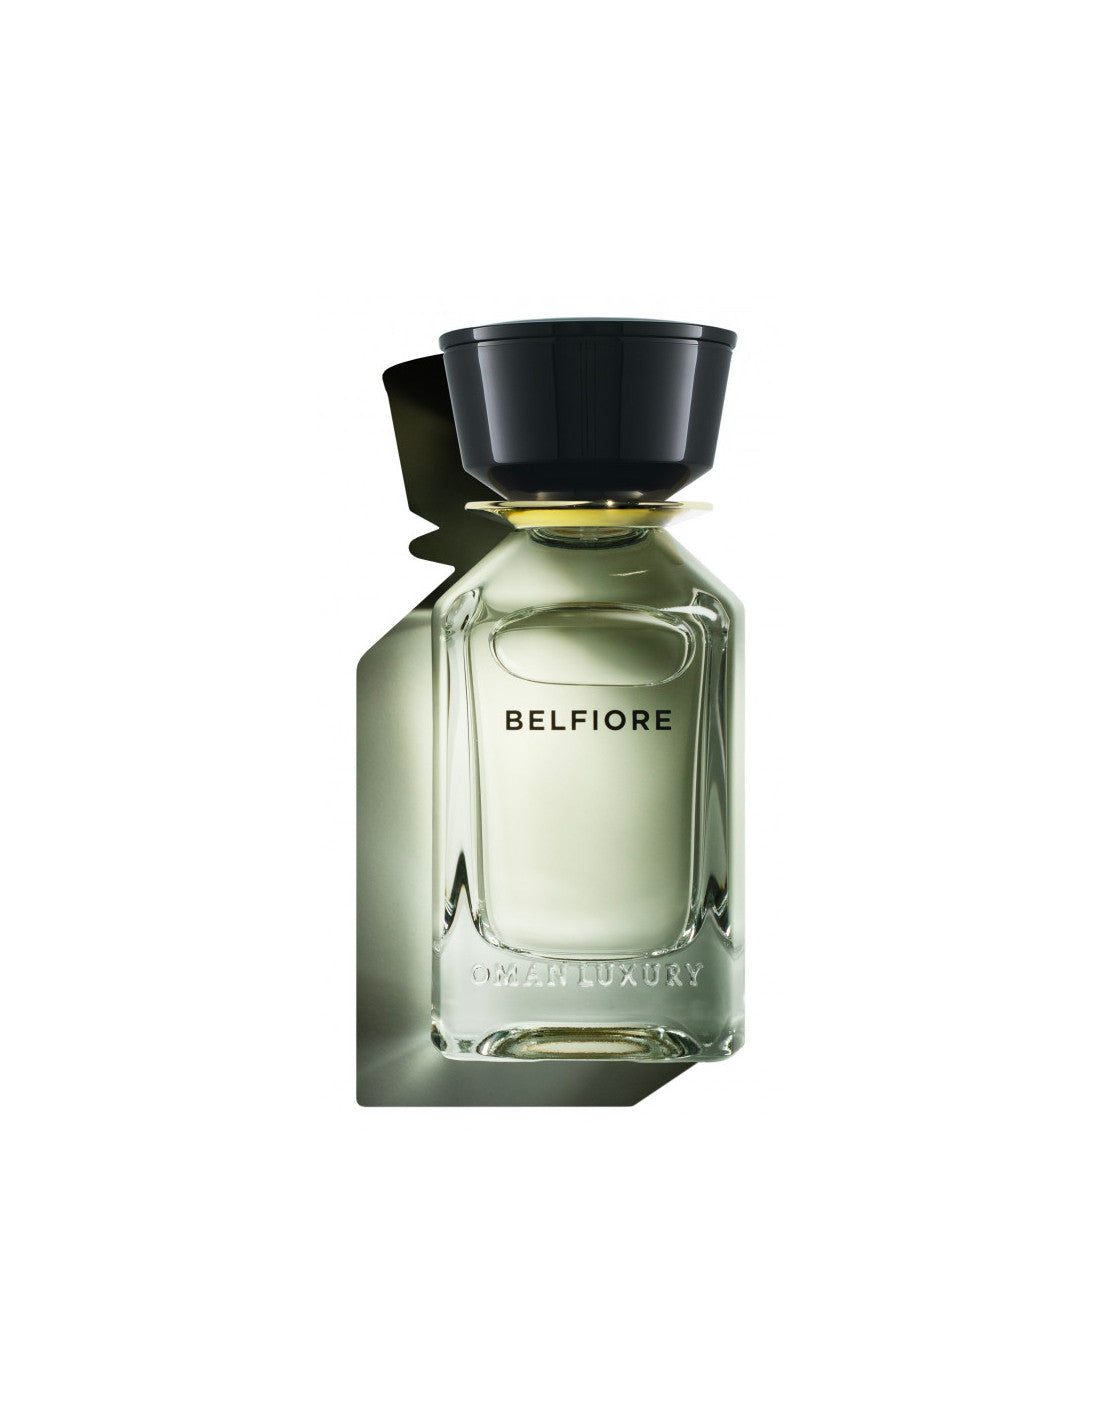 Omanluxury Belfiore Parfum - 100 ml